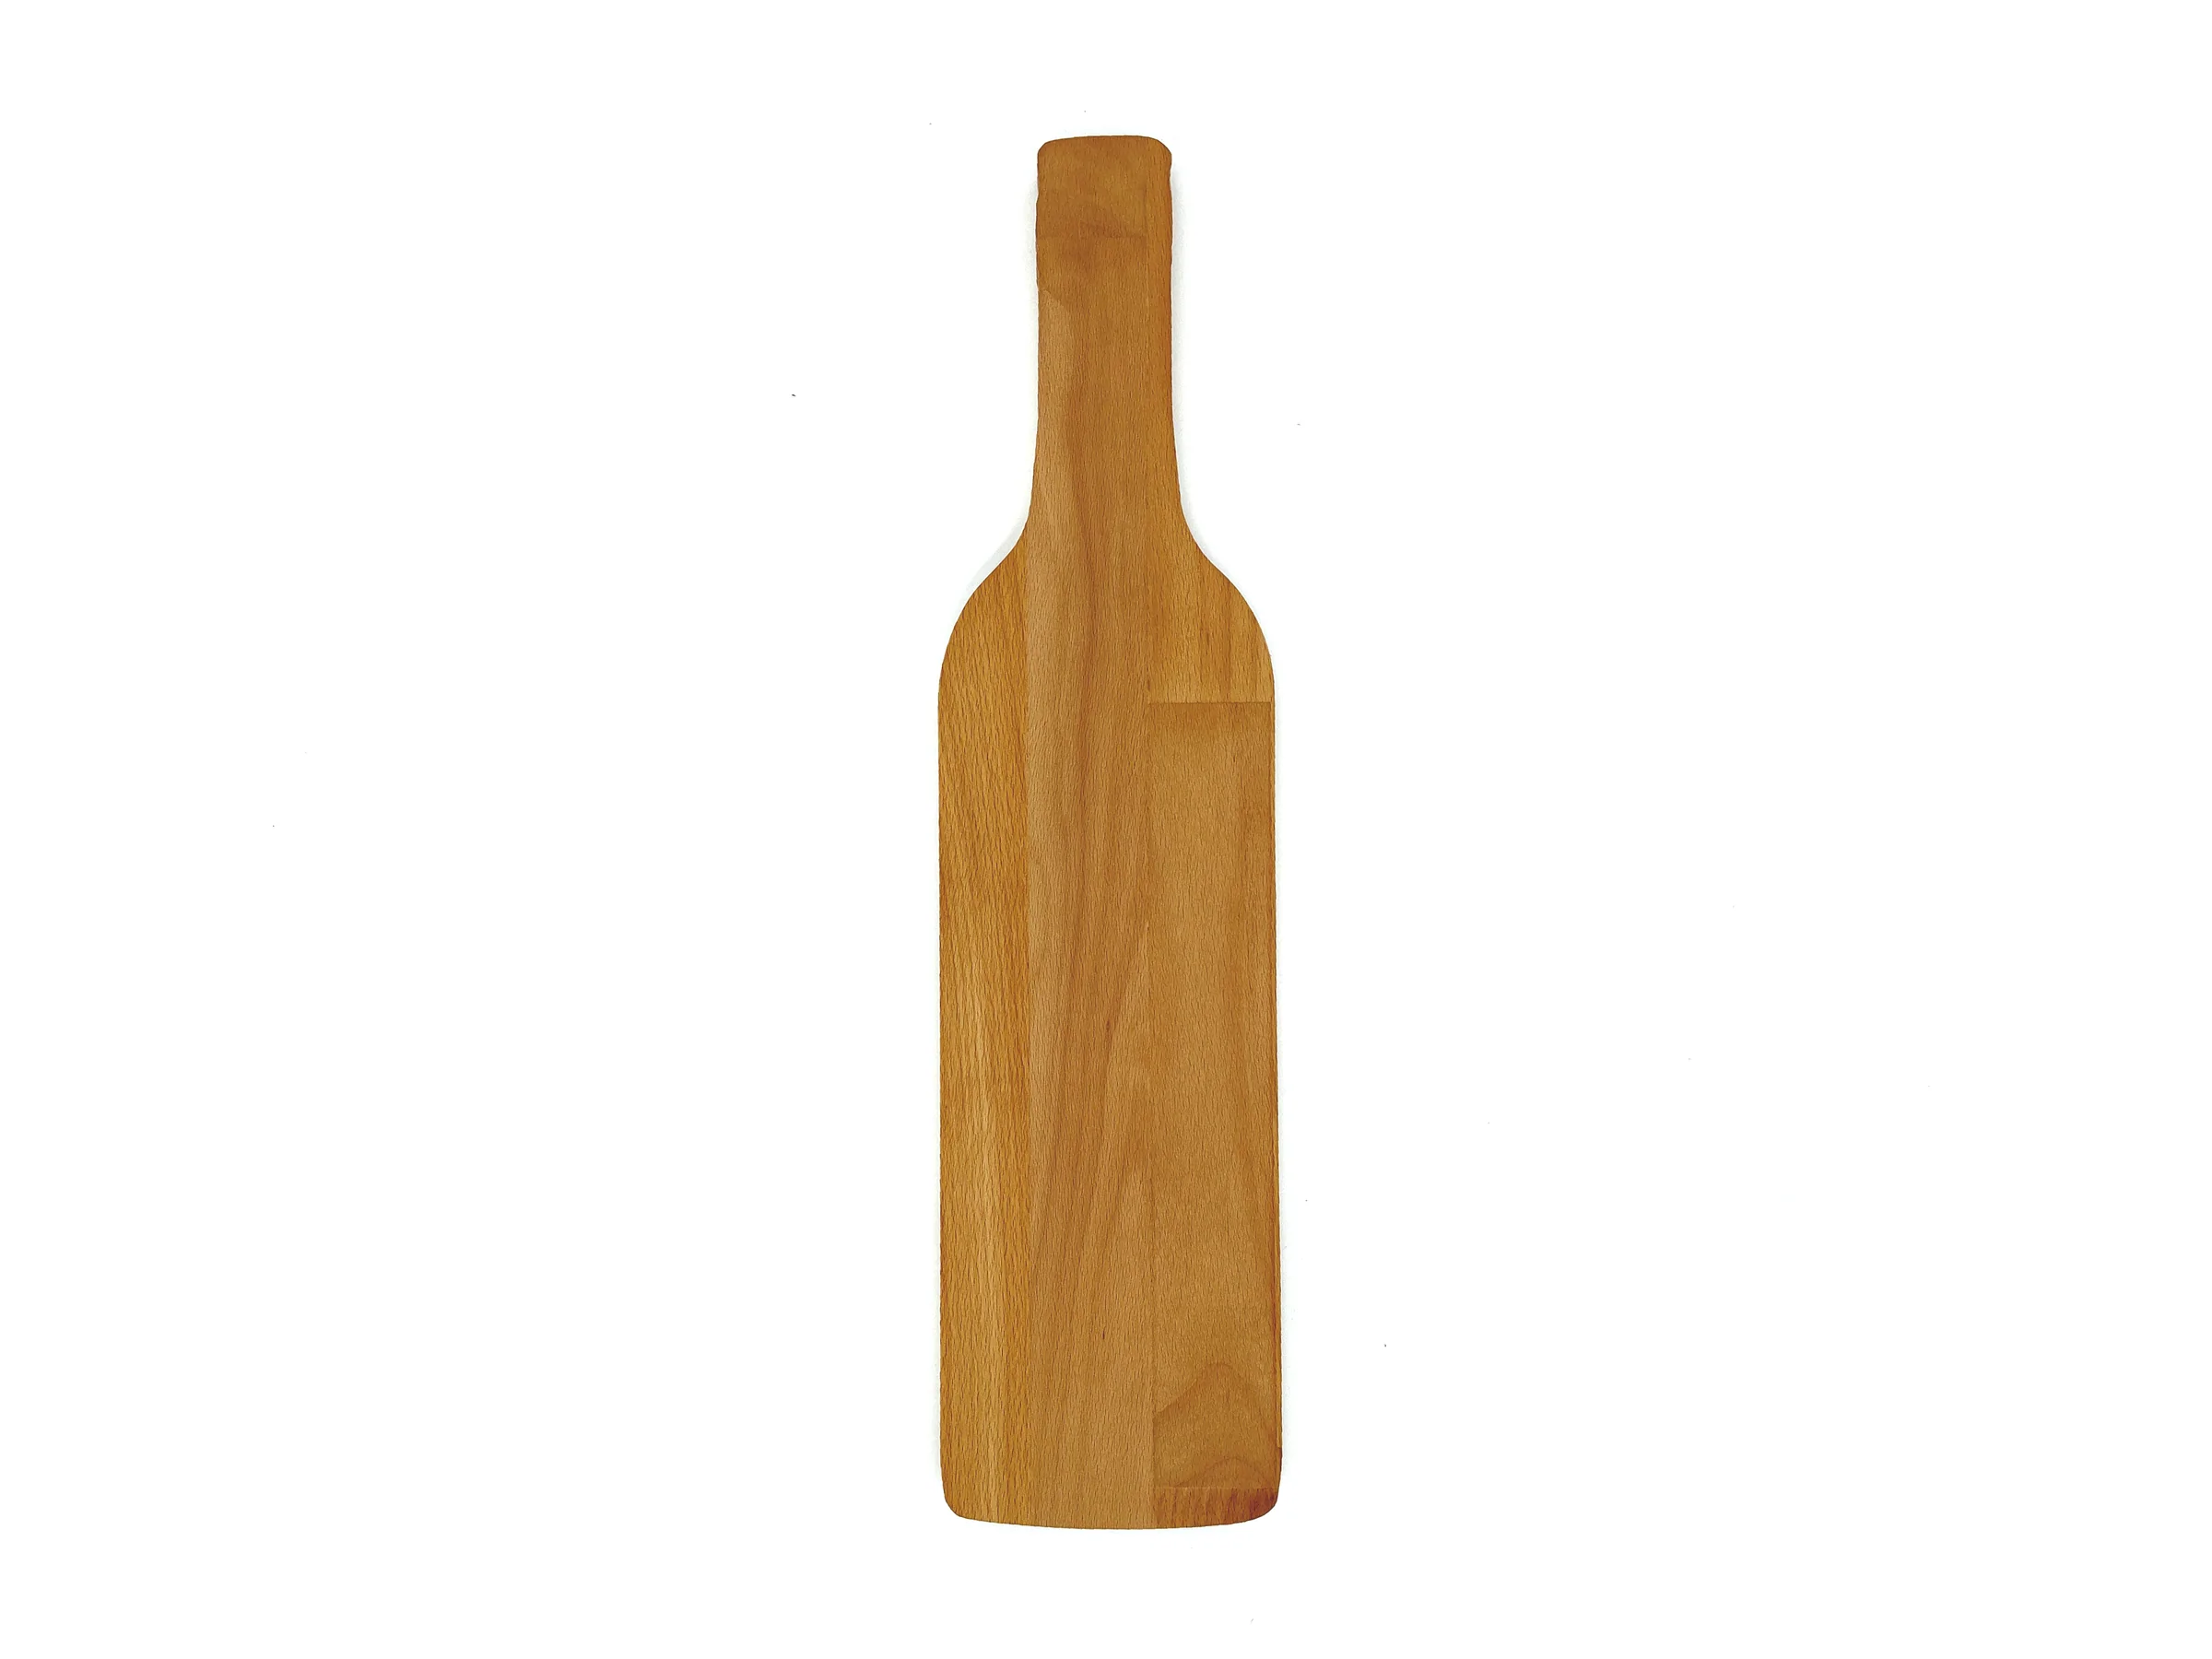 Planche personnalisée en forme de bouteille de vin - Dassel - Zaprinta France